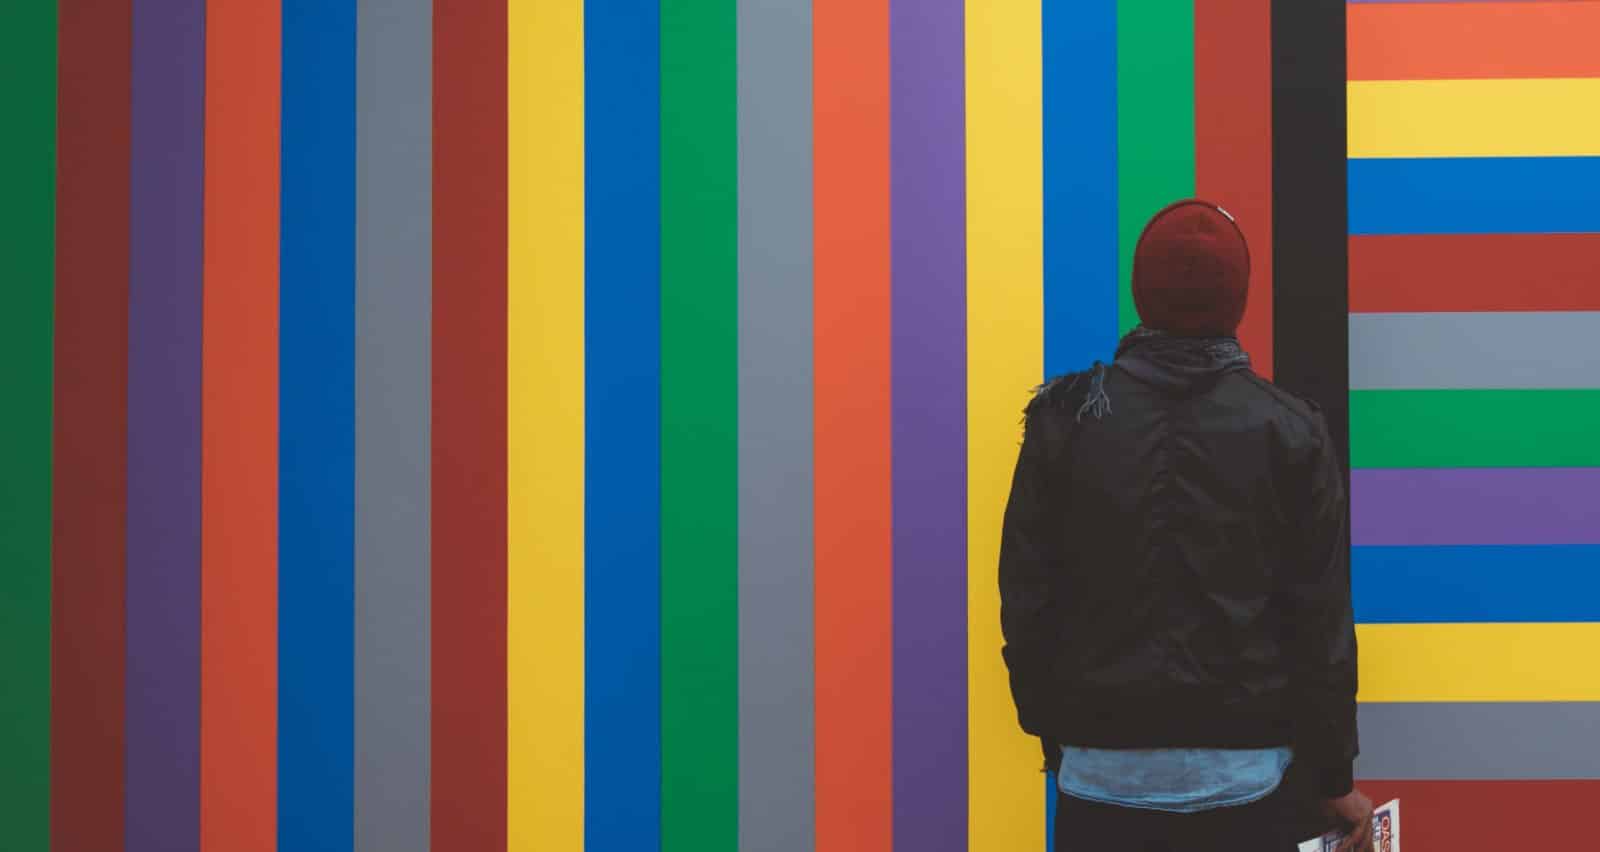 17 načina na koje boje utječu na naše emocije